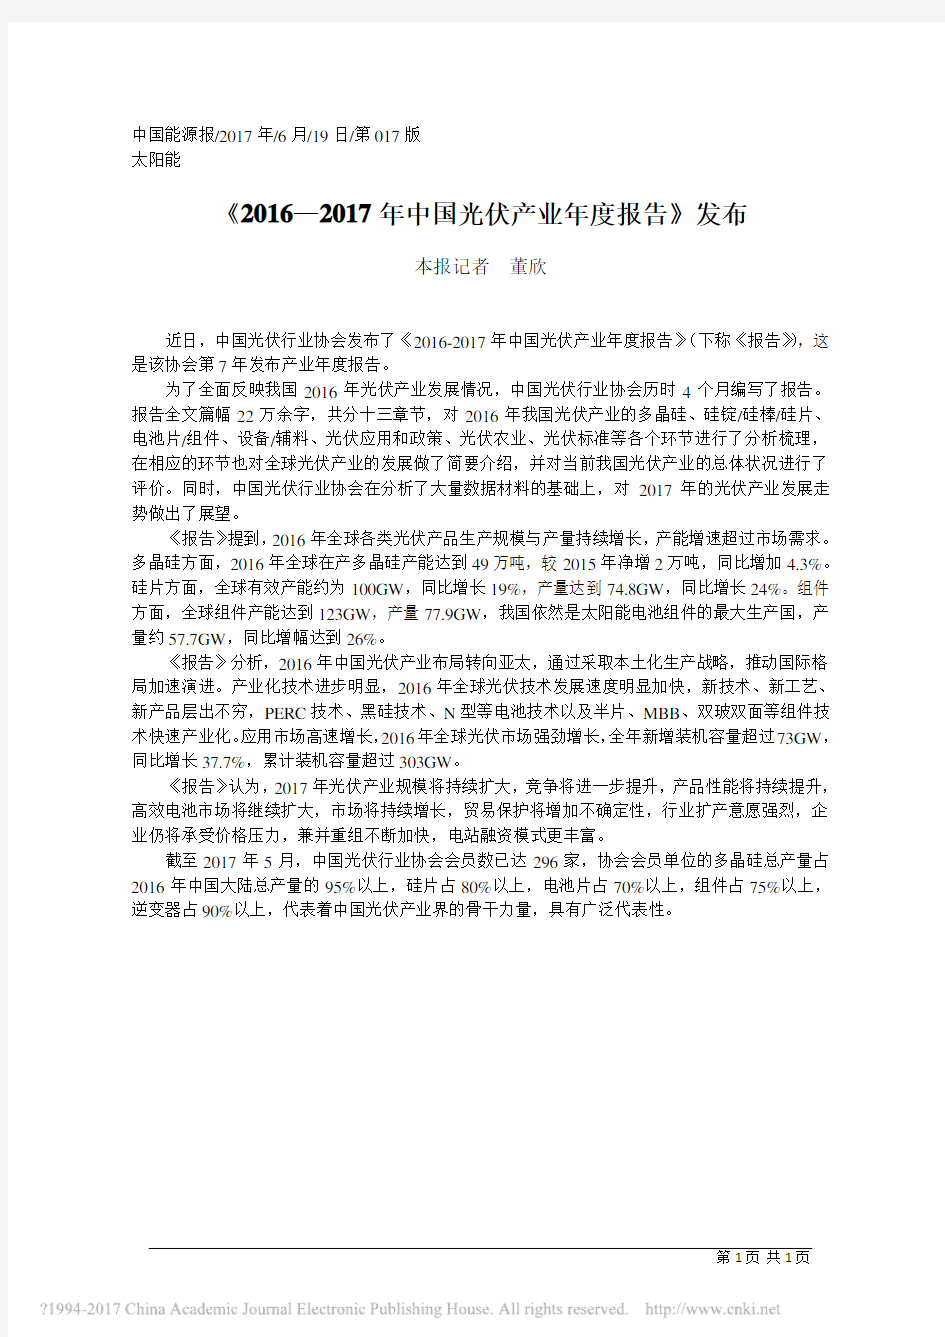 _2016_2017年中国光伏产业年度报告_发布_董欣